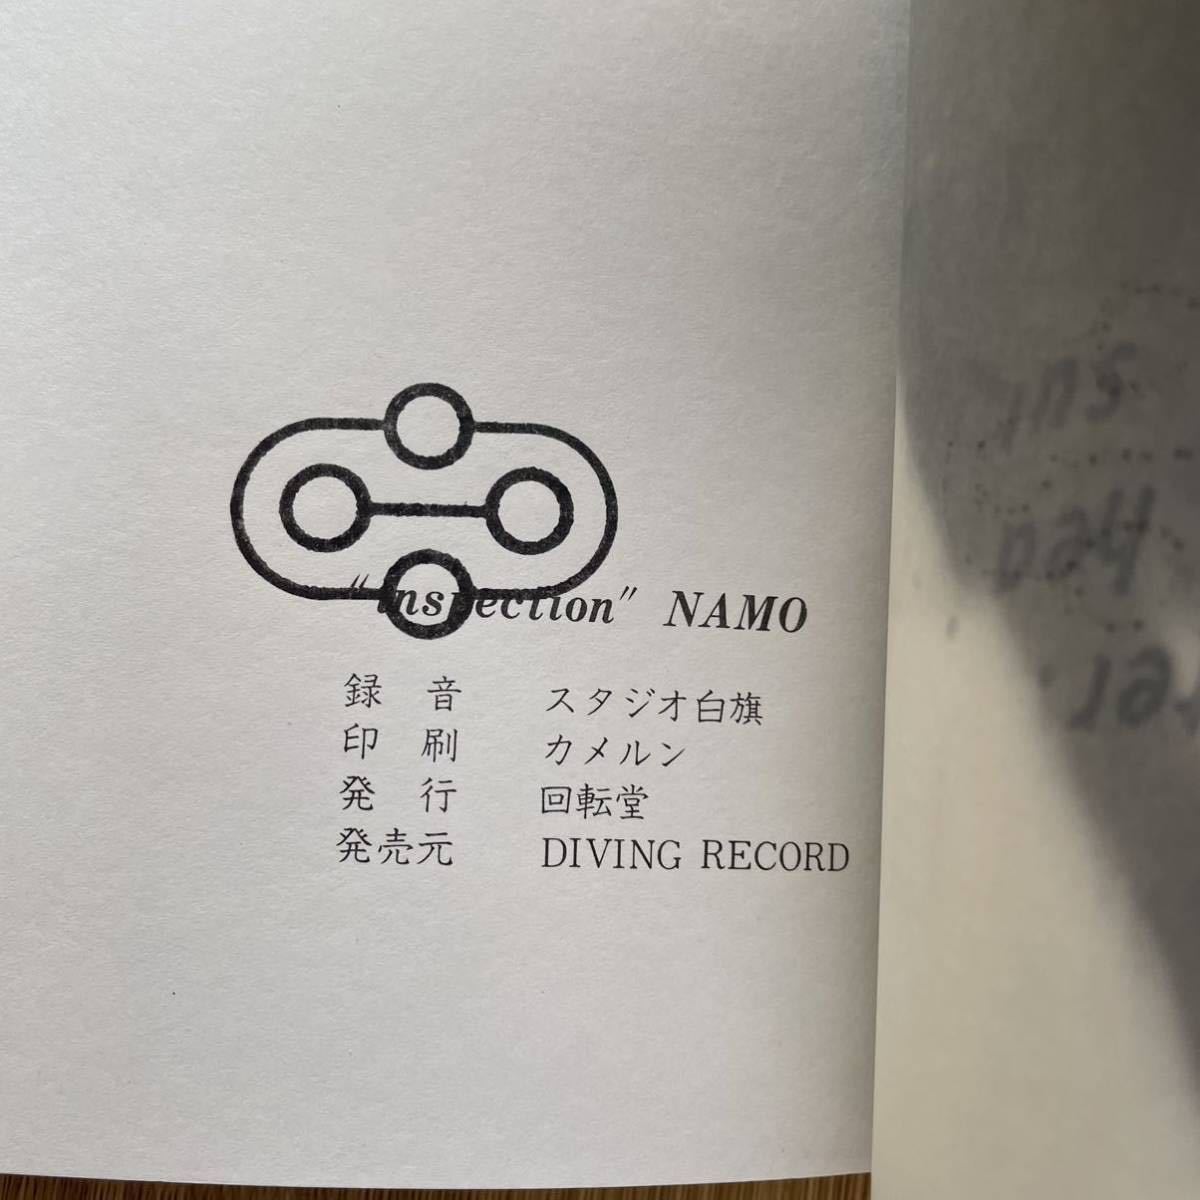 自主盤・NAMO[Inspection]7inch＋art book 自主制作盤 かげろうレコード Japanese obscure new wave オブスキュア ニューウェーブ unknown_画像8